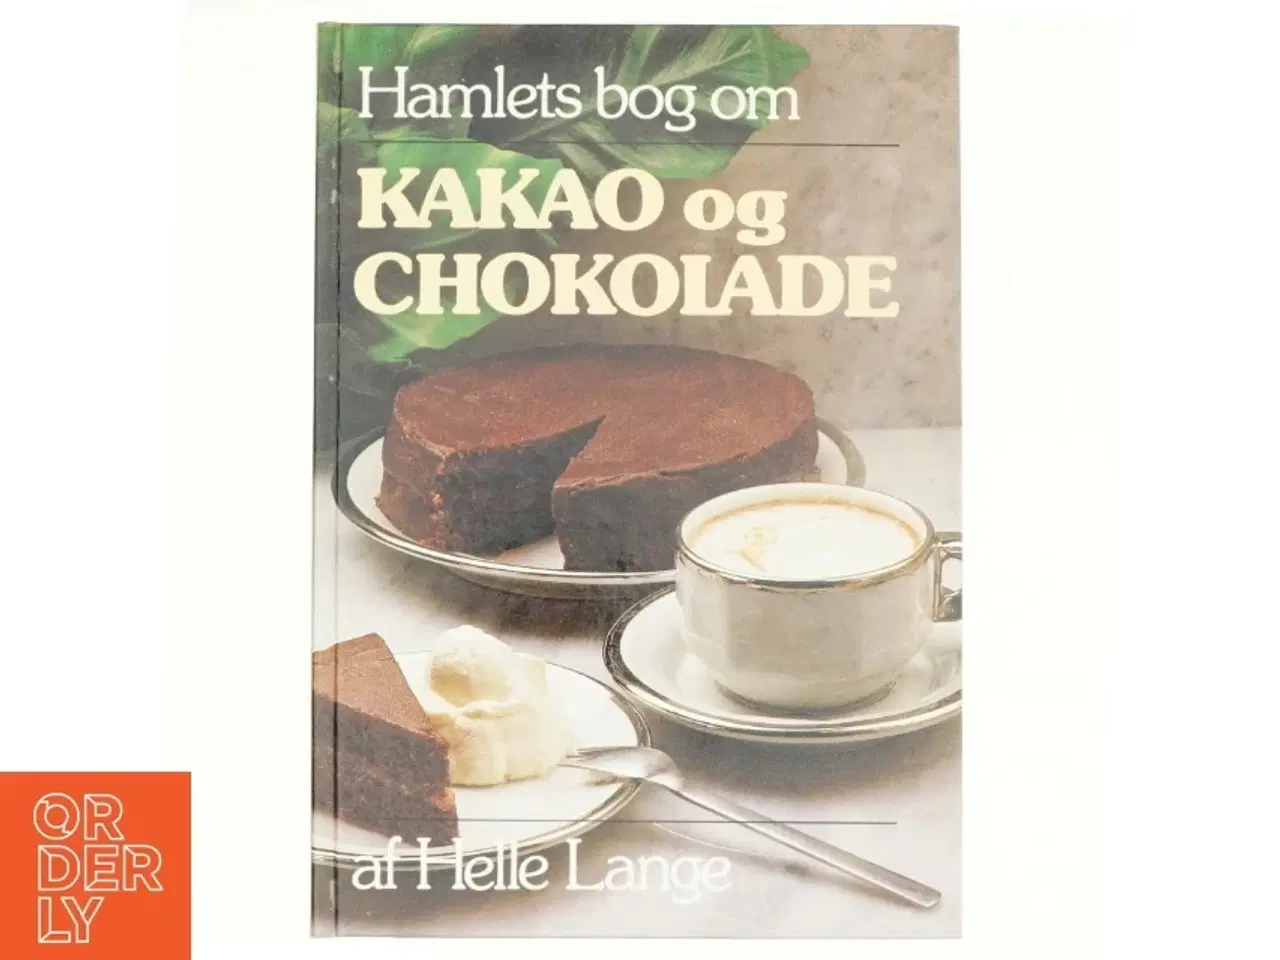 Billede 1 - Hanlets bog om Kakao og Chokolade